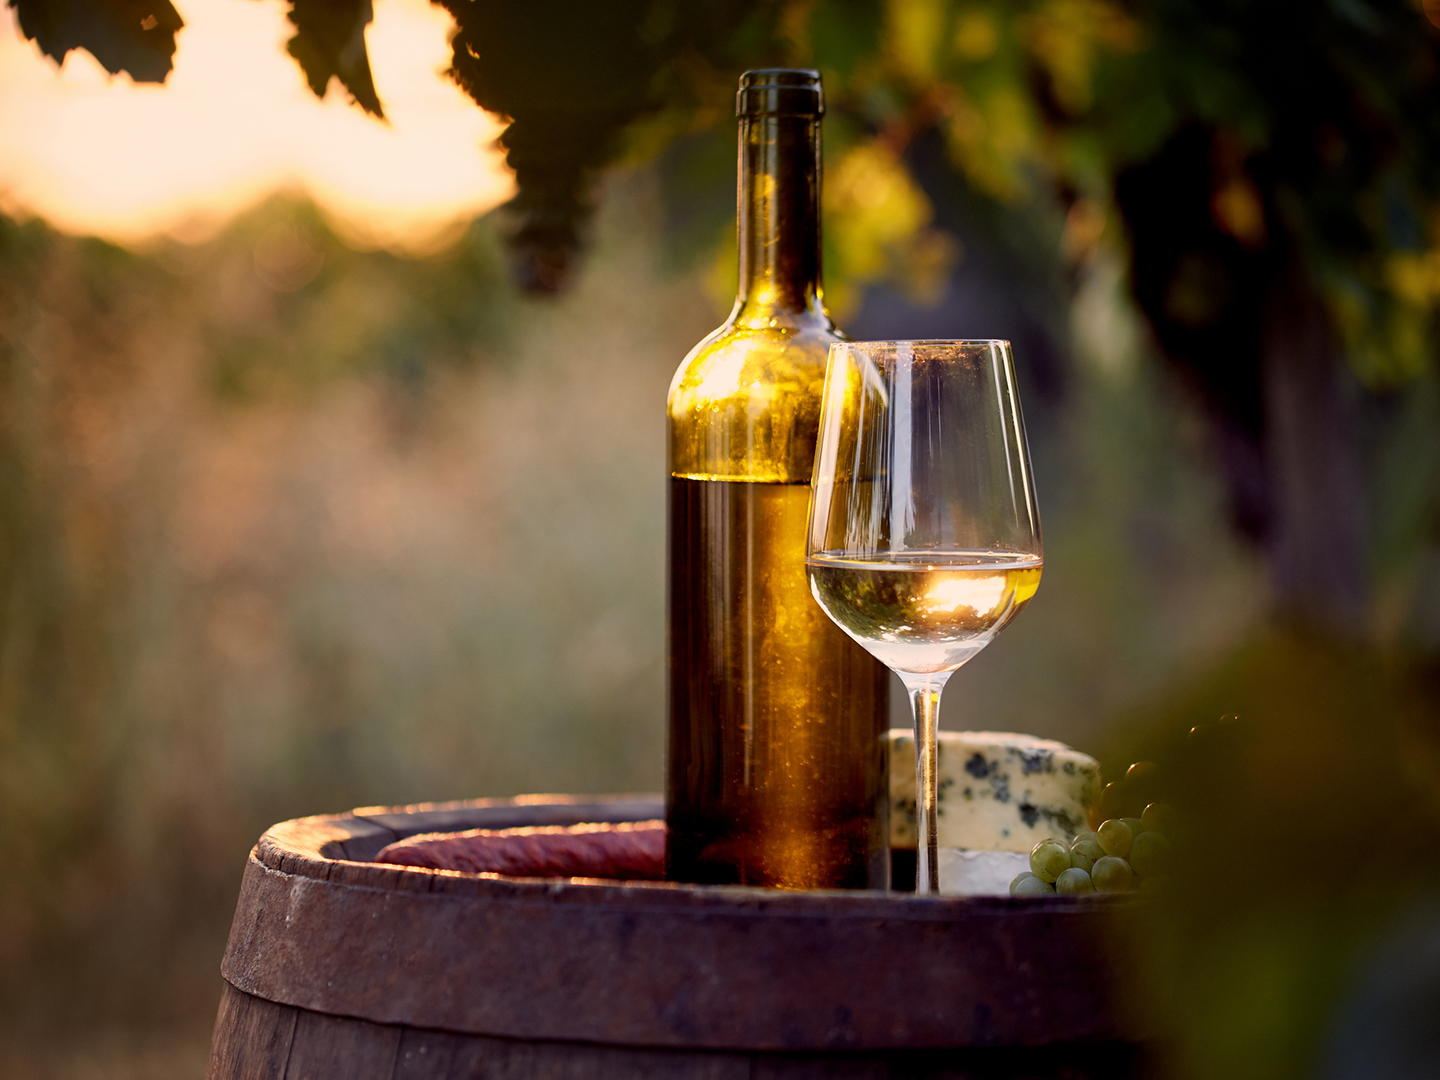 توجد نسبة من الزرنيخ في النبيذ، فهل يجب علينا القلق إزاء تناوله؟